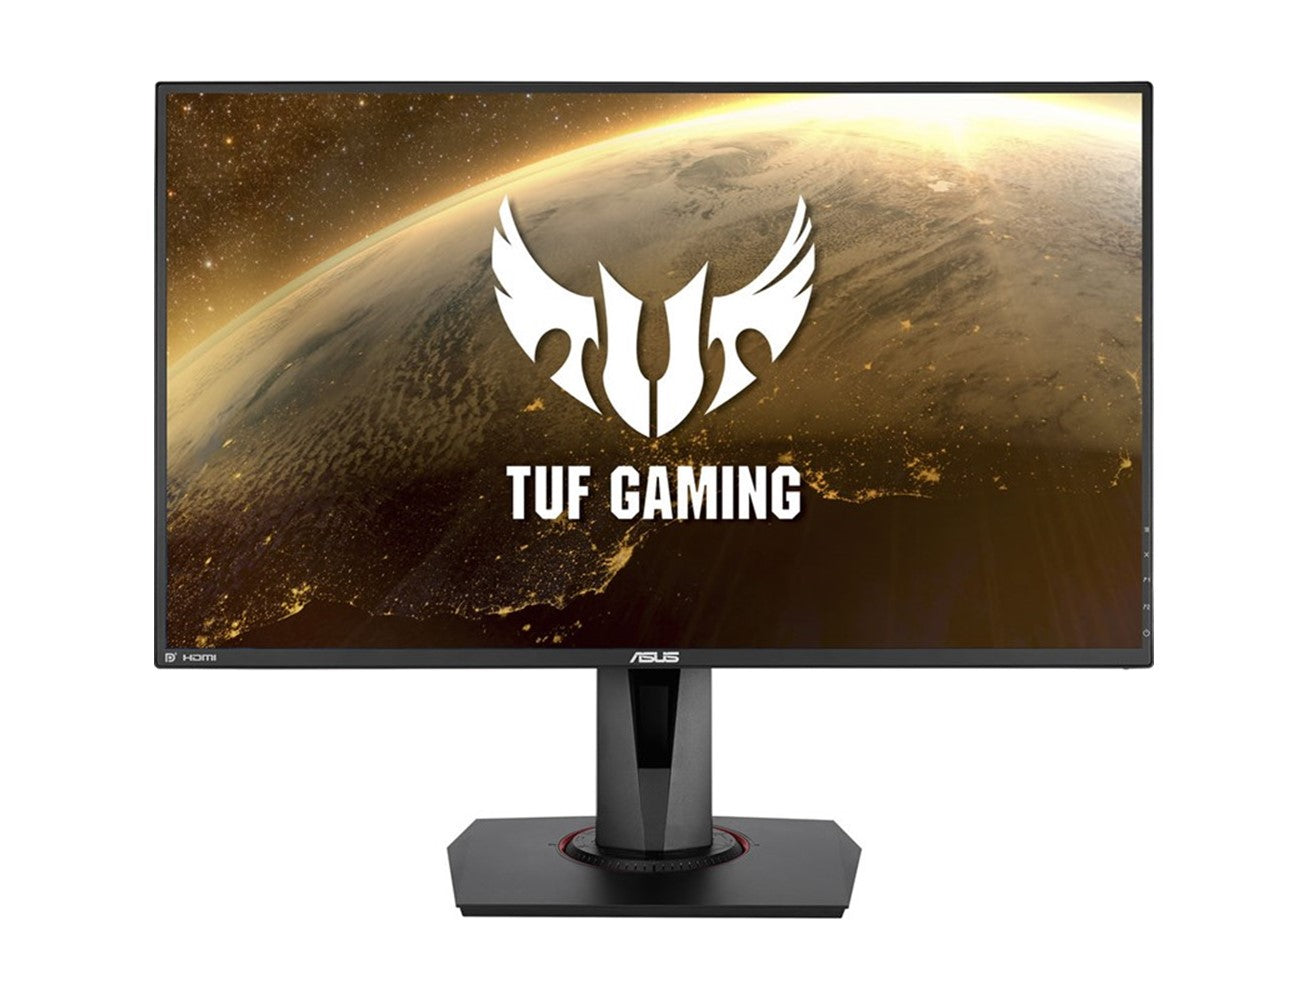 اسوس شاشة ألعاب  TUF Gaming VG279QM، شاشة 27 بوصة فل اتش دي, معدل تحديث 280 هرتز، 1 مللي ثانية، HDR - أسود